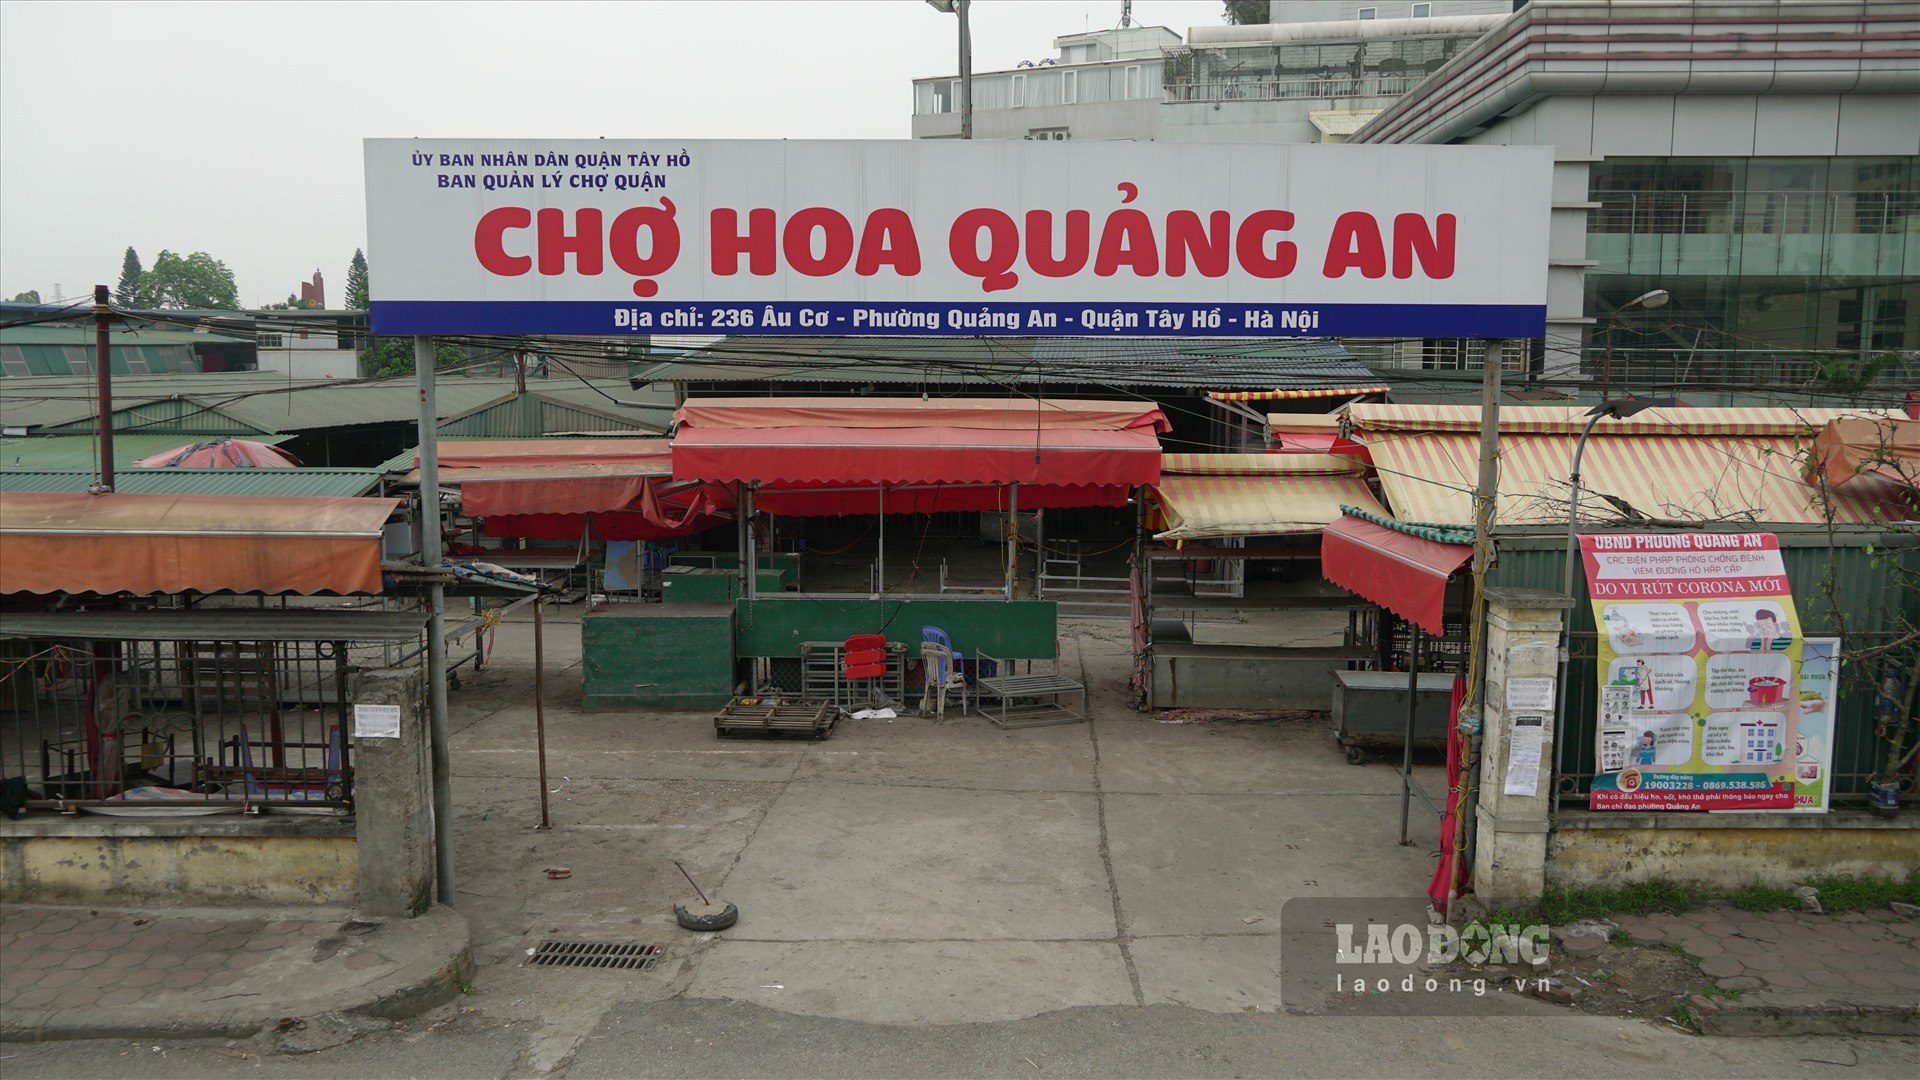 Ngày 16.4, theo ghi nhận của phóng viên, Chợ hoa Quảng An (trên đê Nghi Tàm, Tây Hồ, Hà Nội) đăm chìm trong